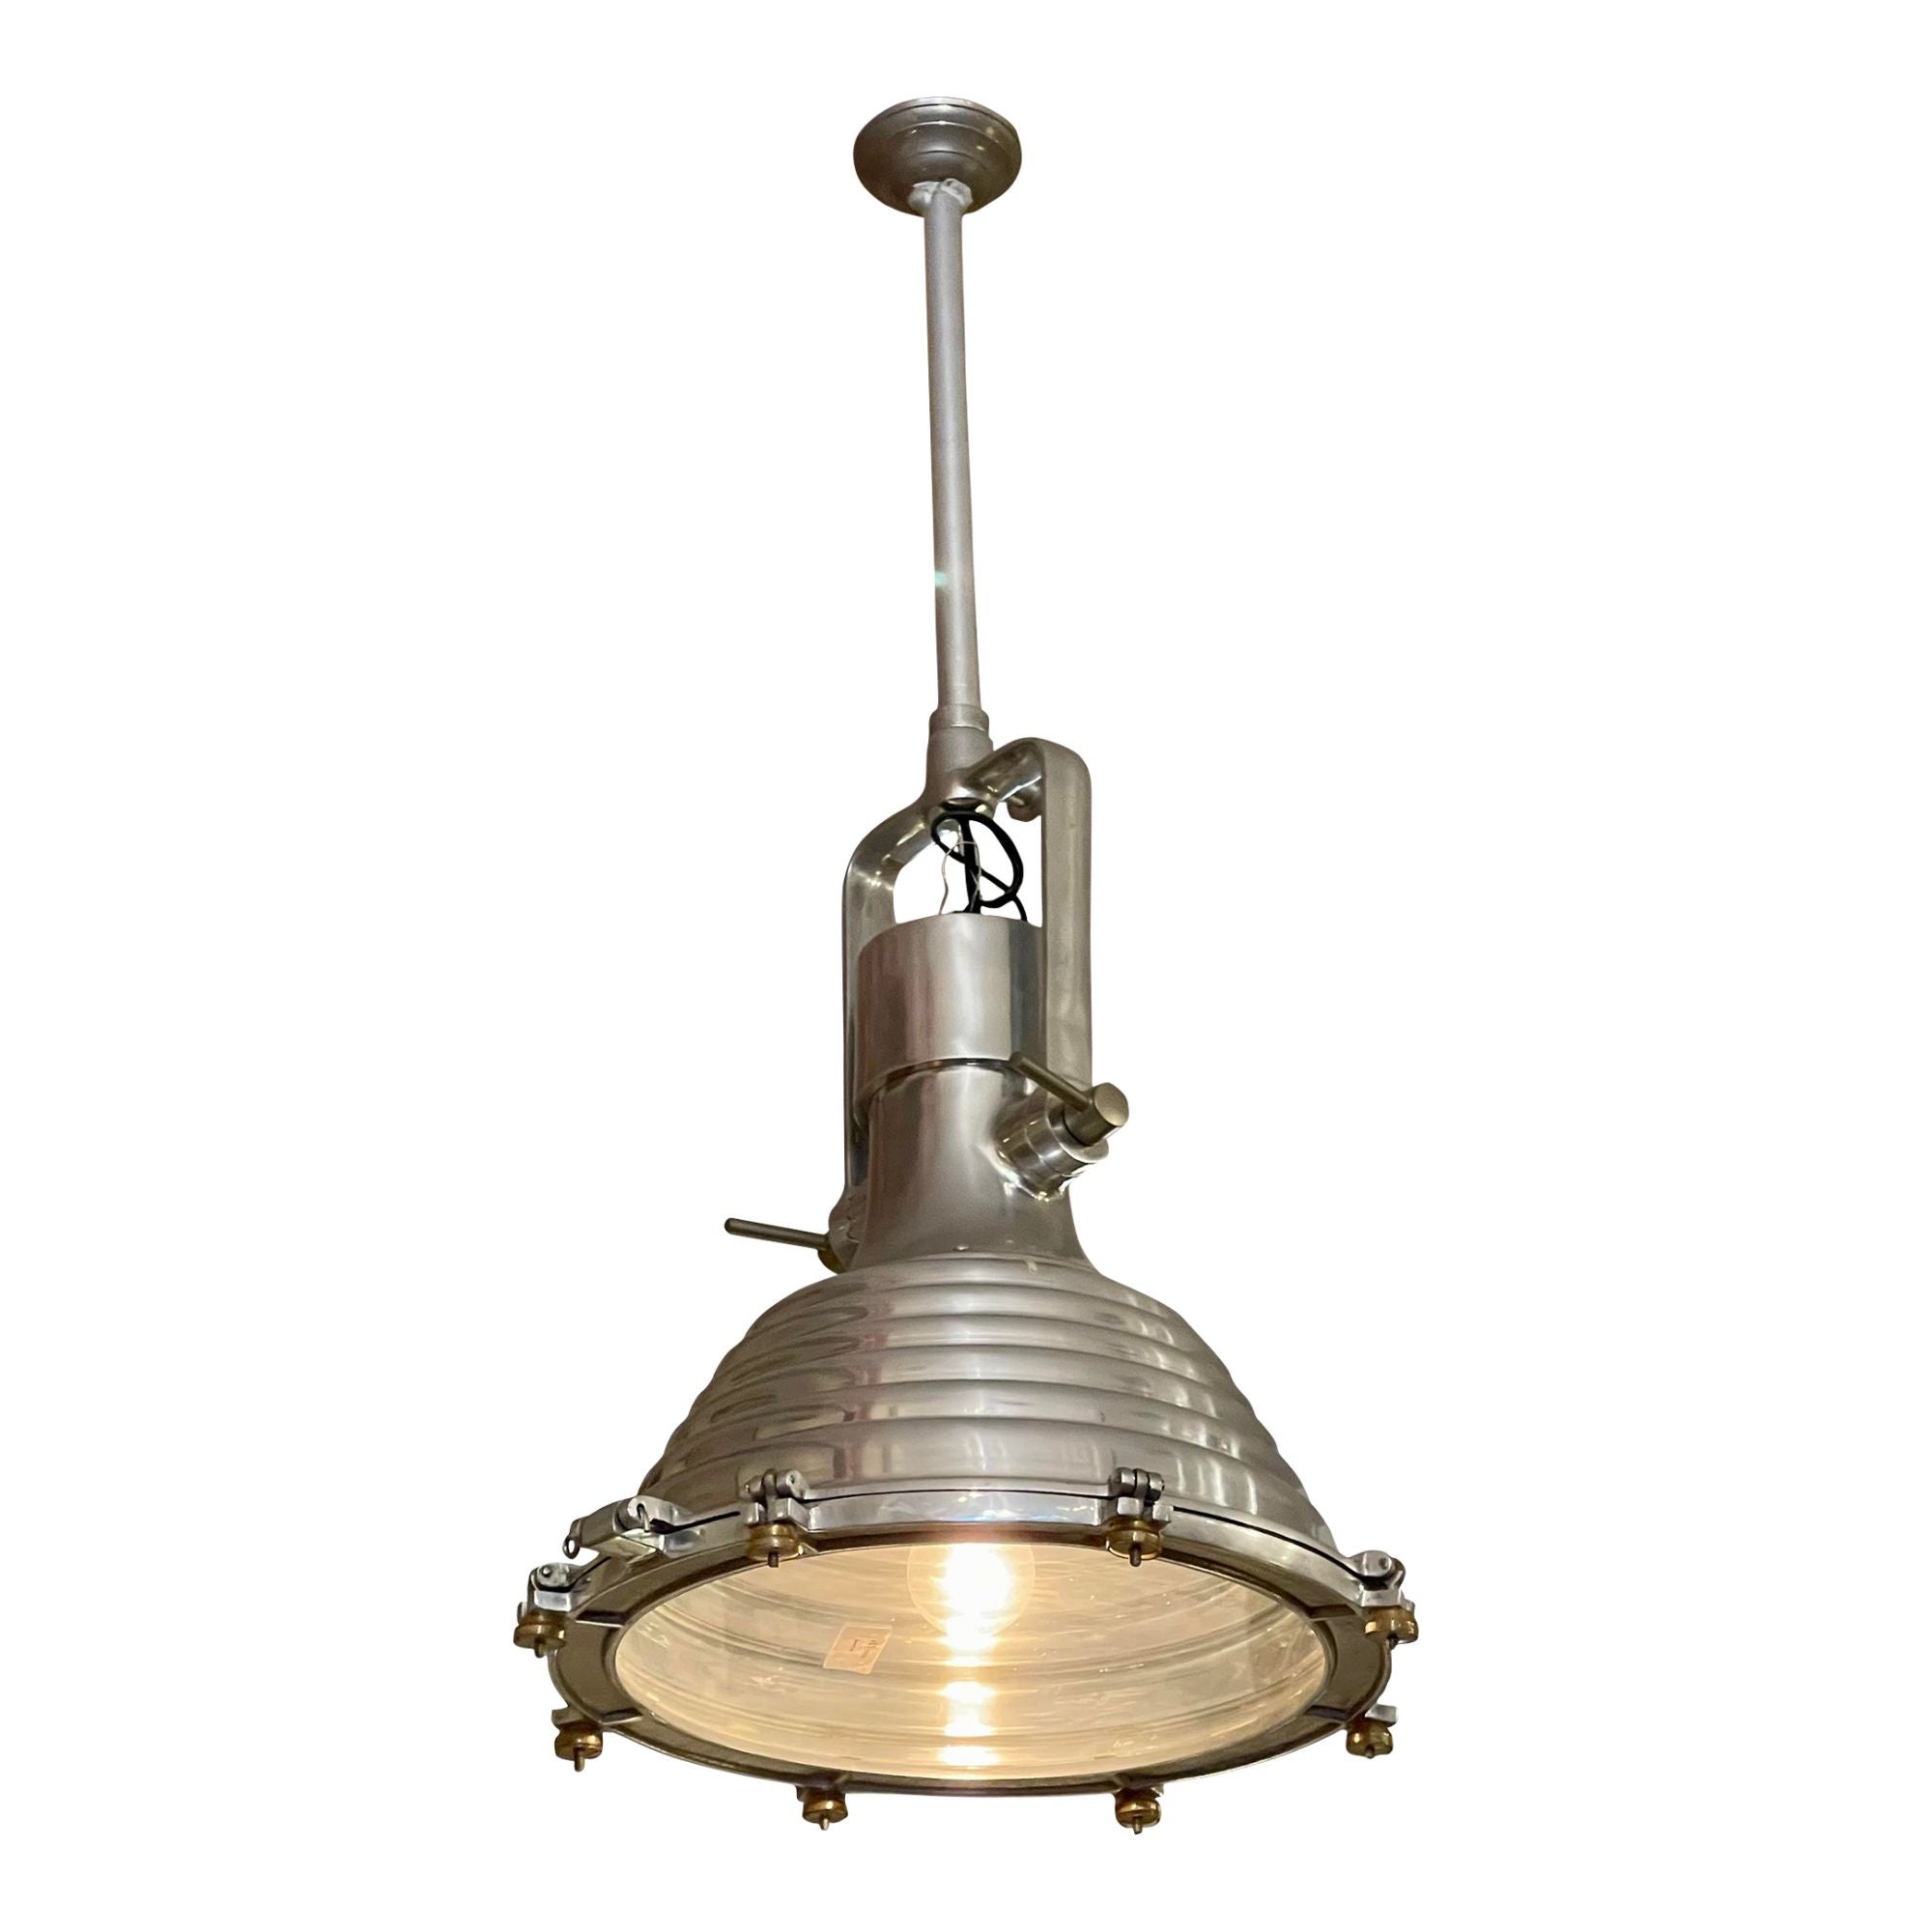 Lampe pendante industrielle chic et nautique Lights Light